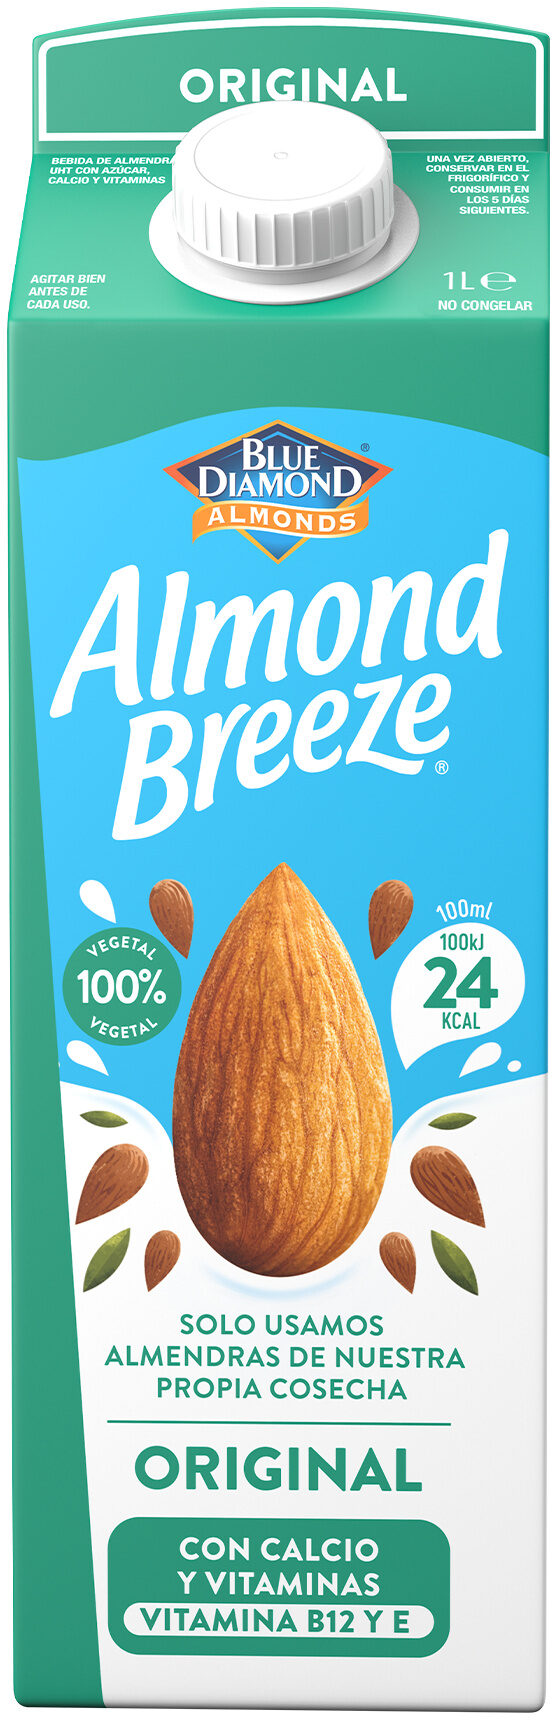 Almond breeze - Producte - es